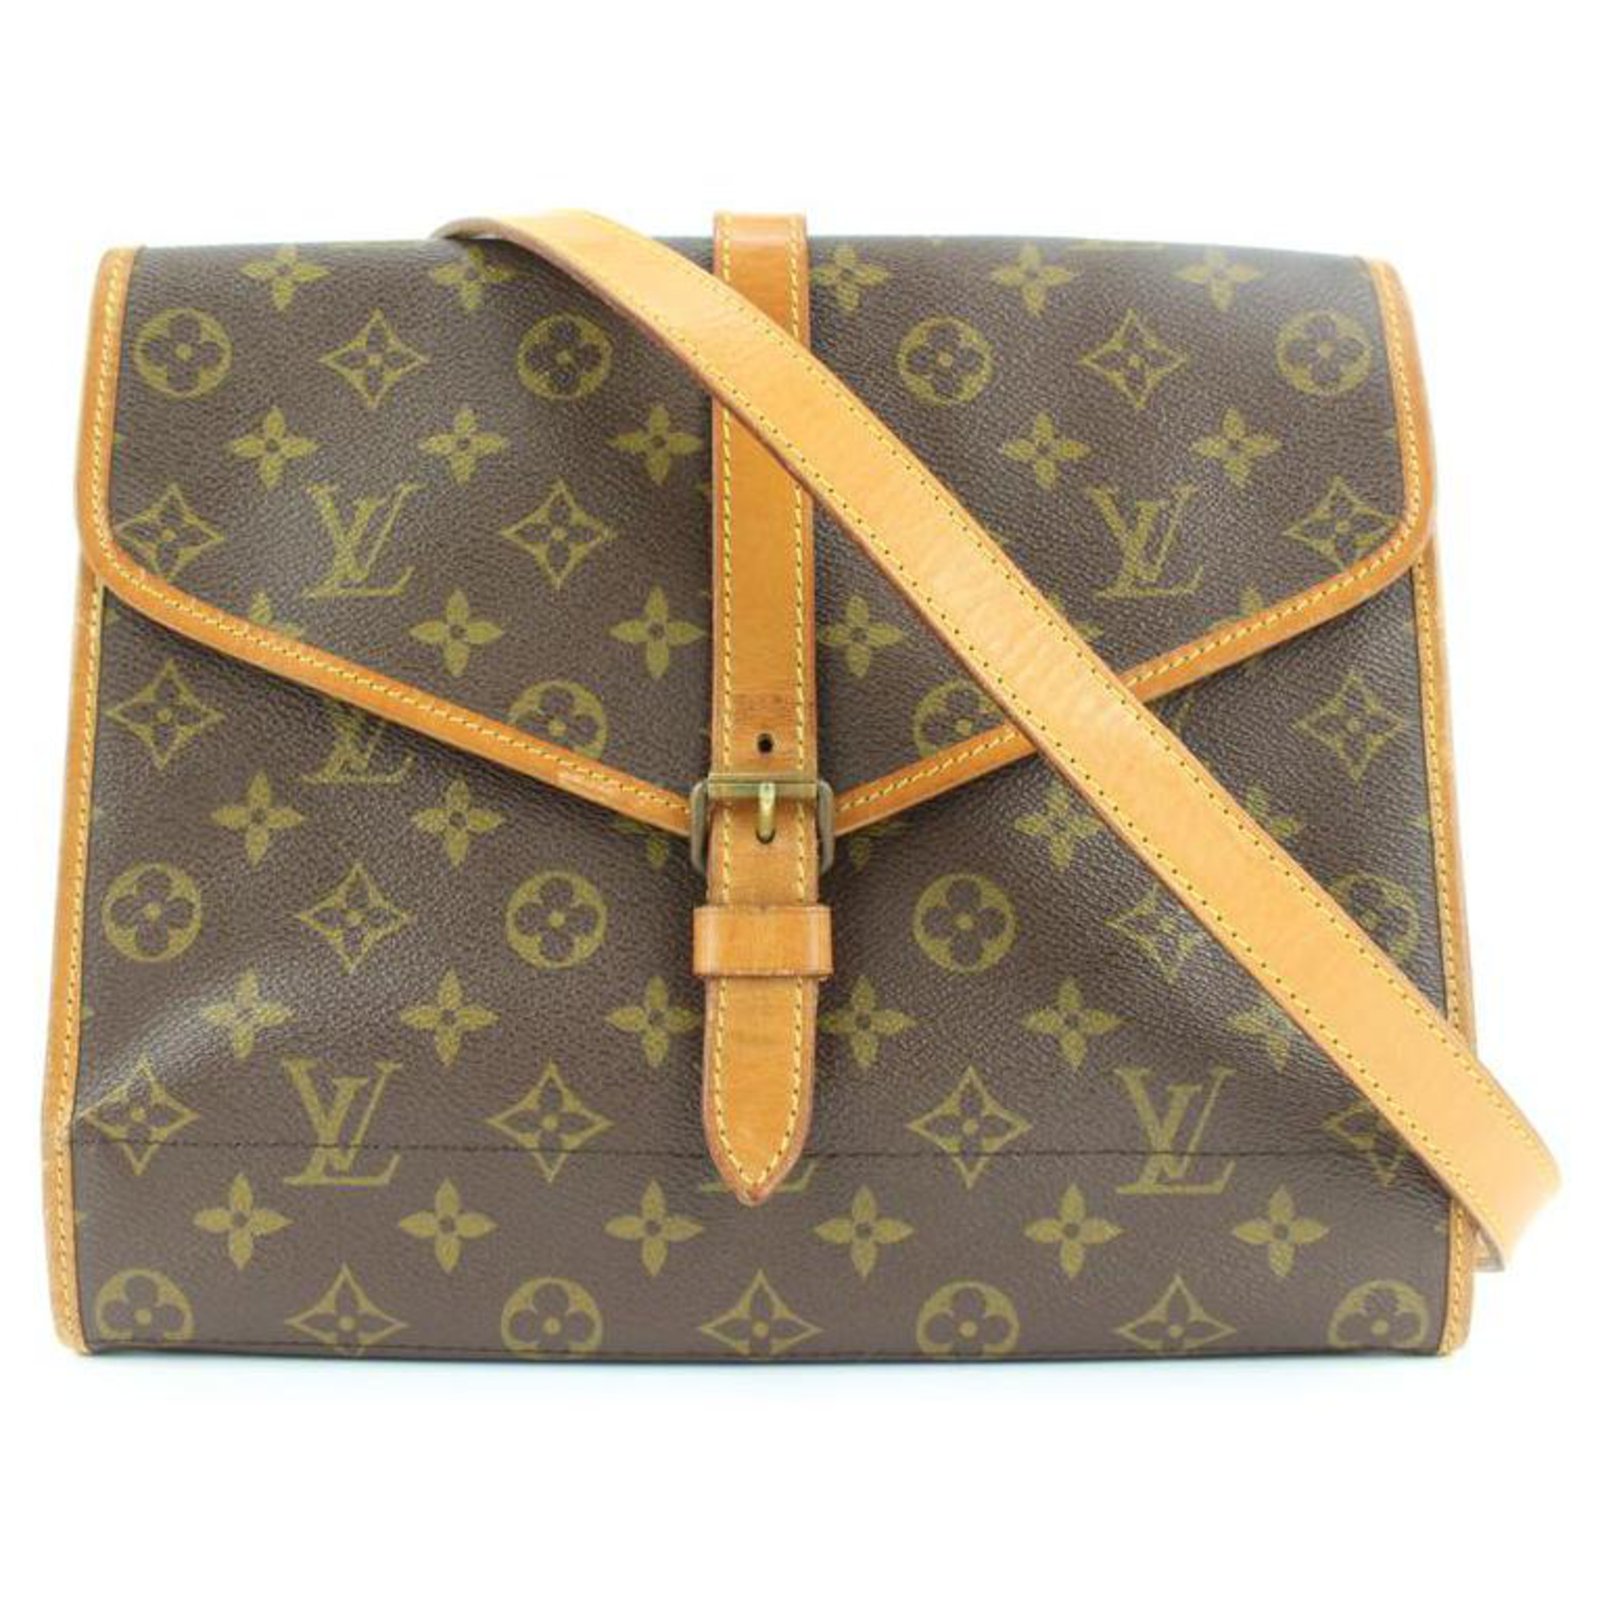 RARE Vintage Louis Vuitton Monogram Purse Bag Pochette Clutch Bag Without  Strap